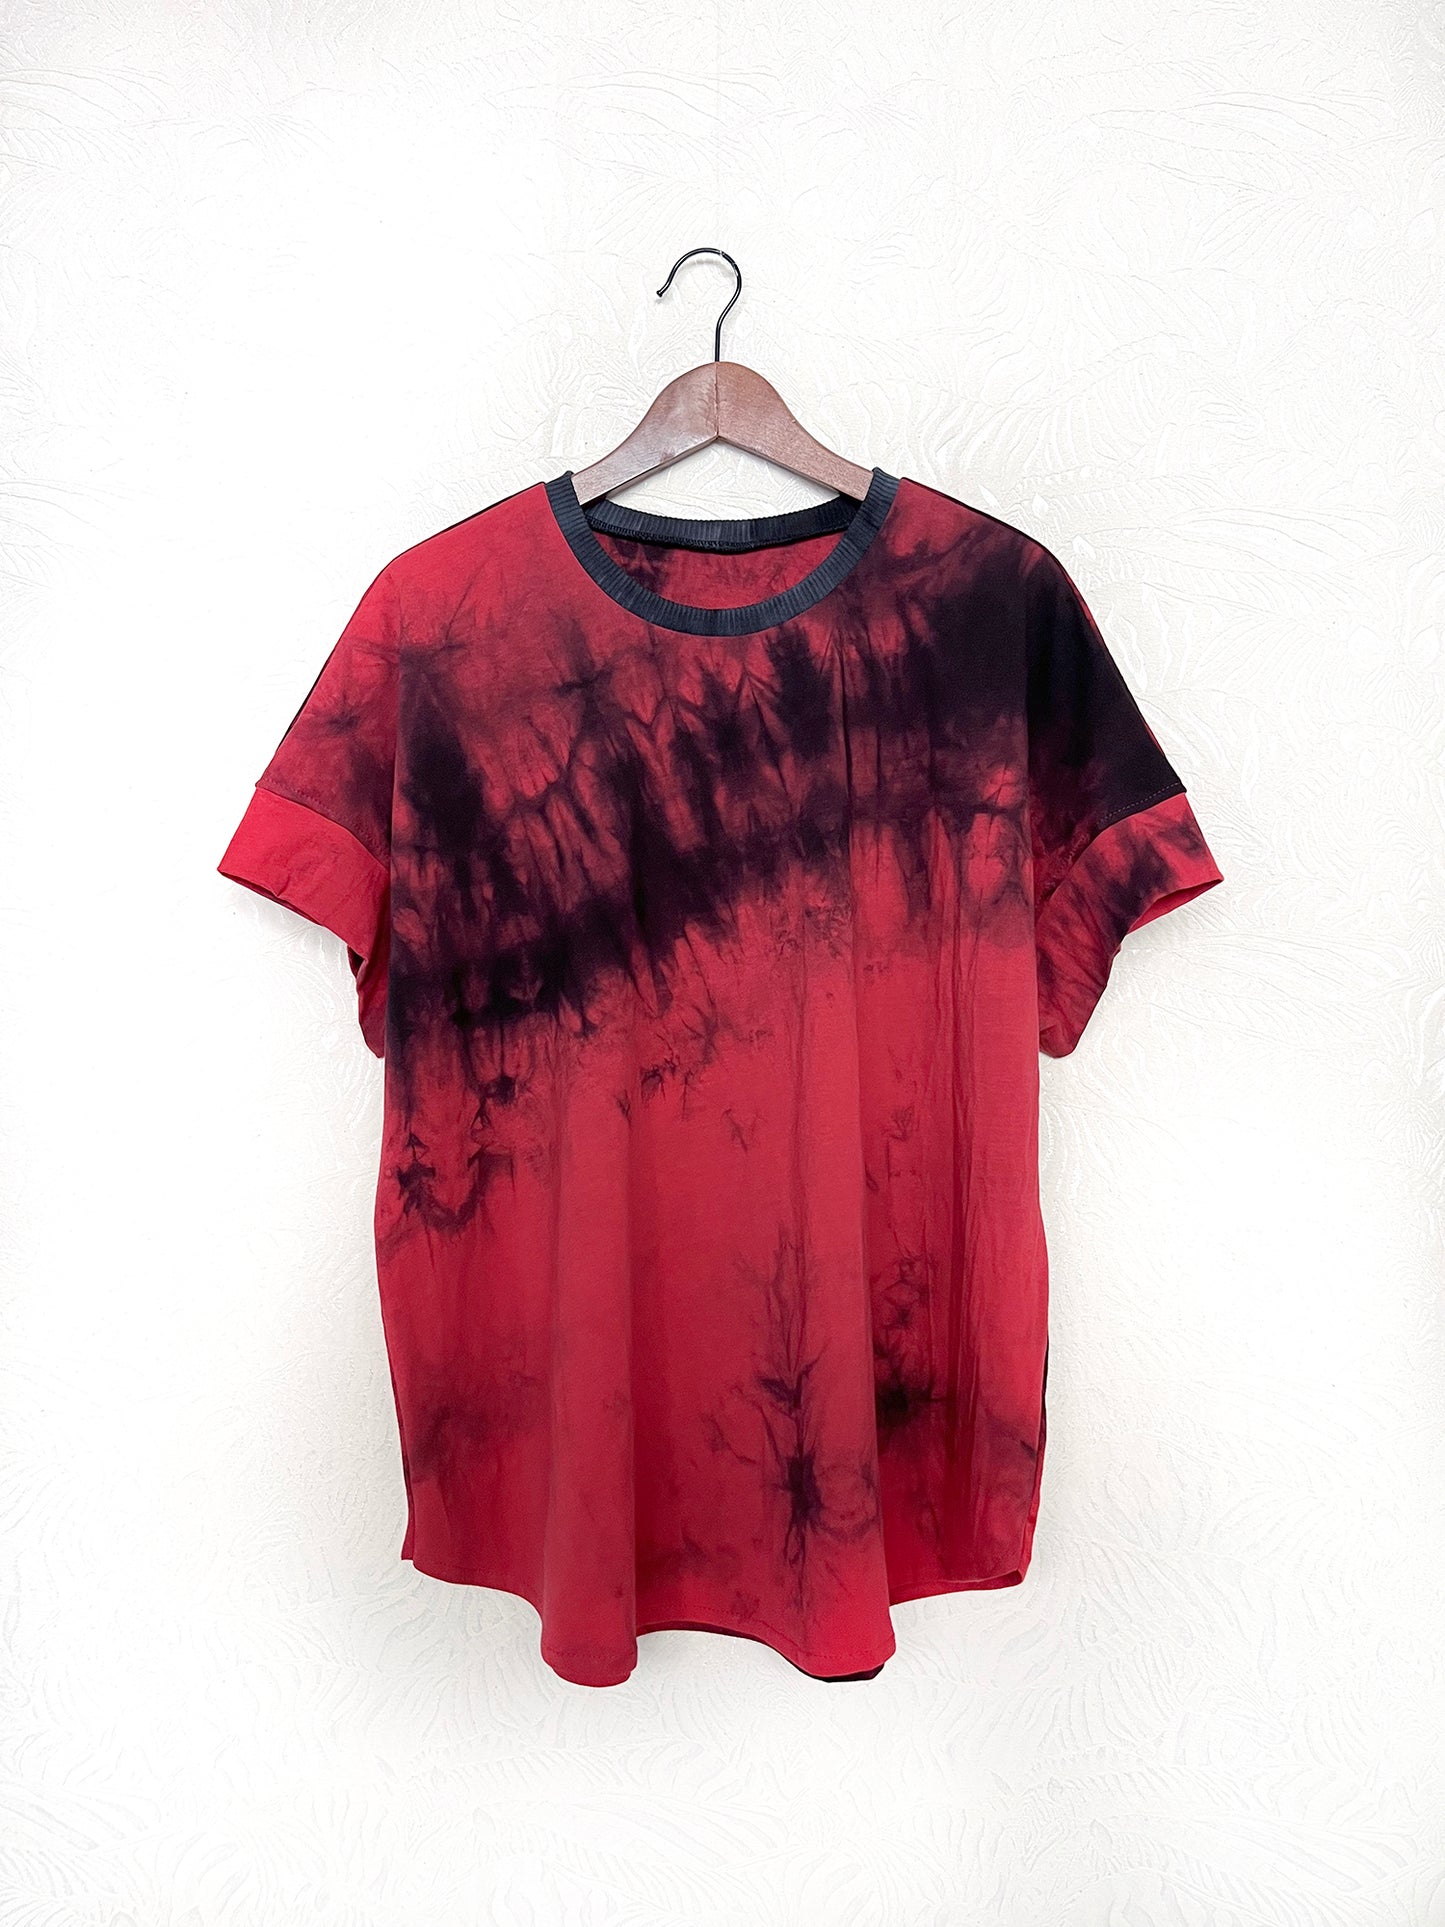 Magic Red T-Shirt / L, XL